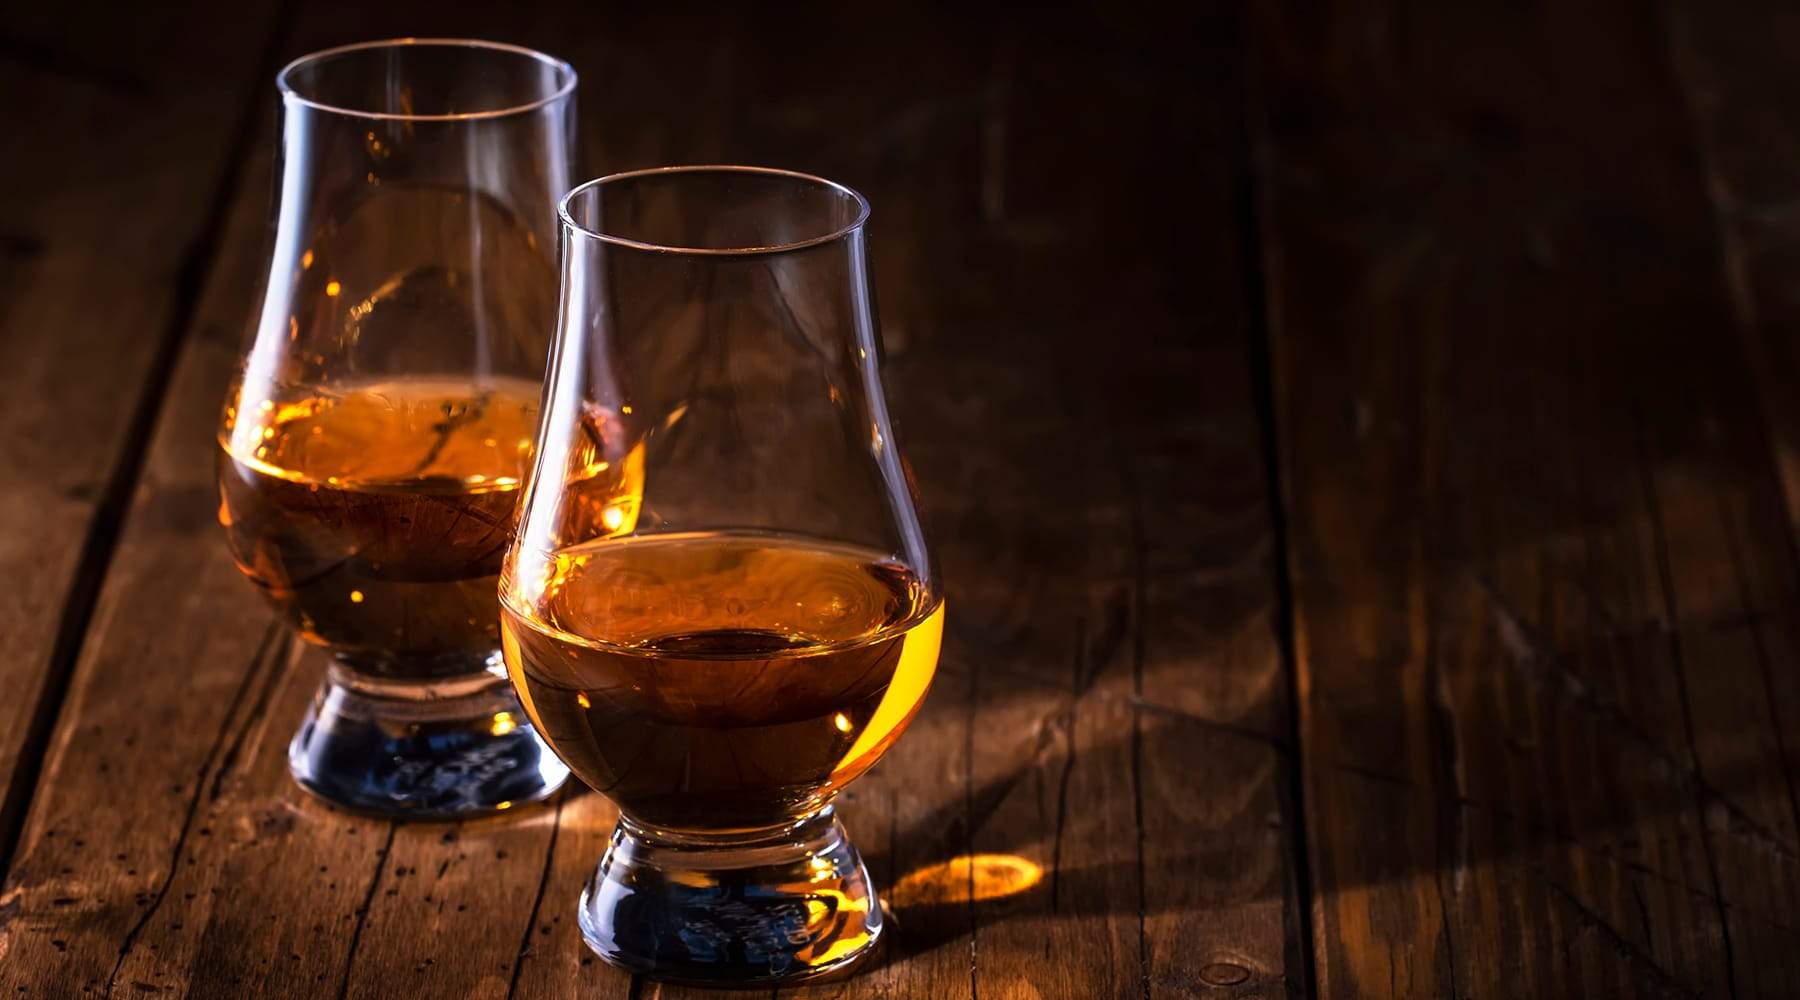 A review of Skene Scotch Whisky’s Bunnahabhain Peated